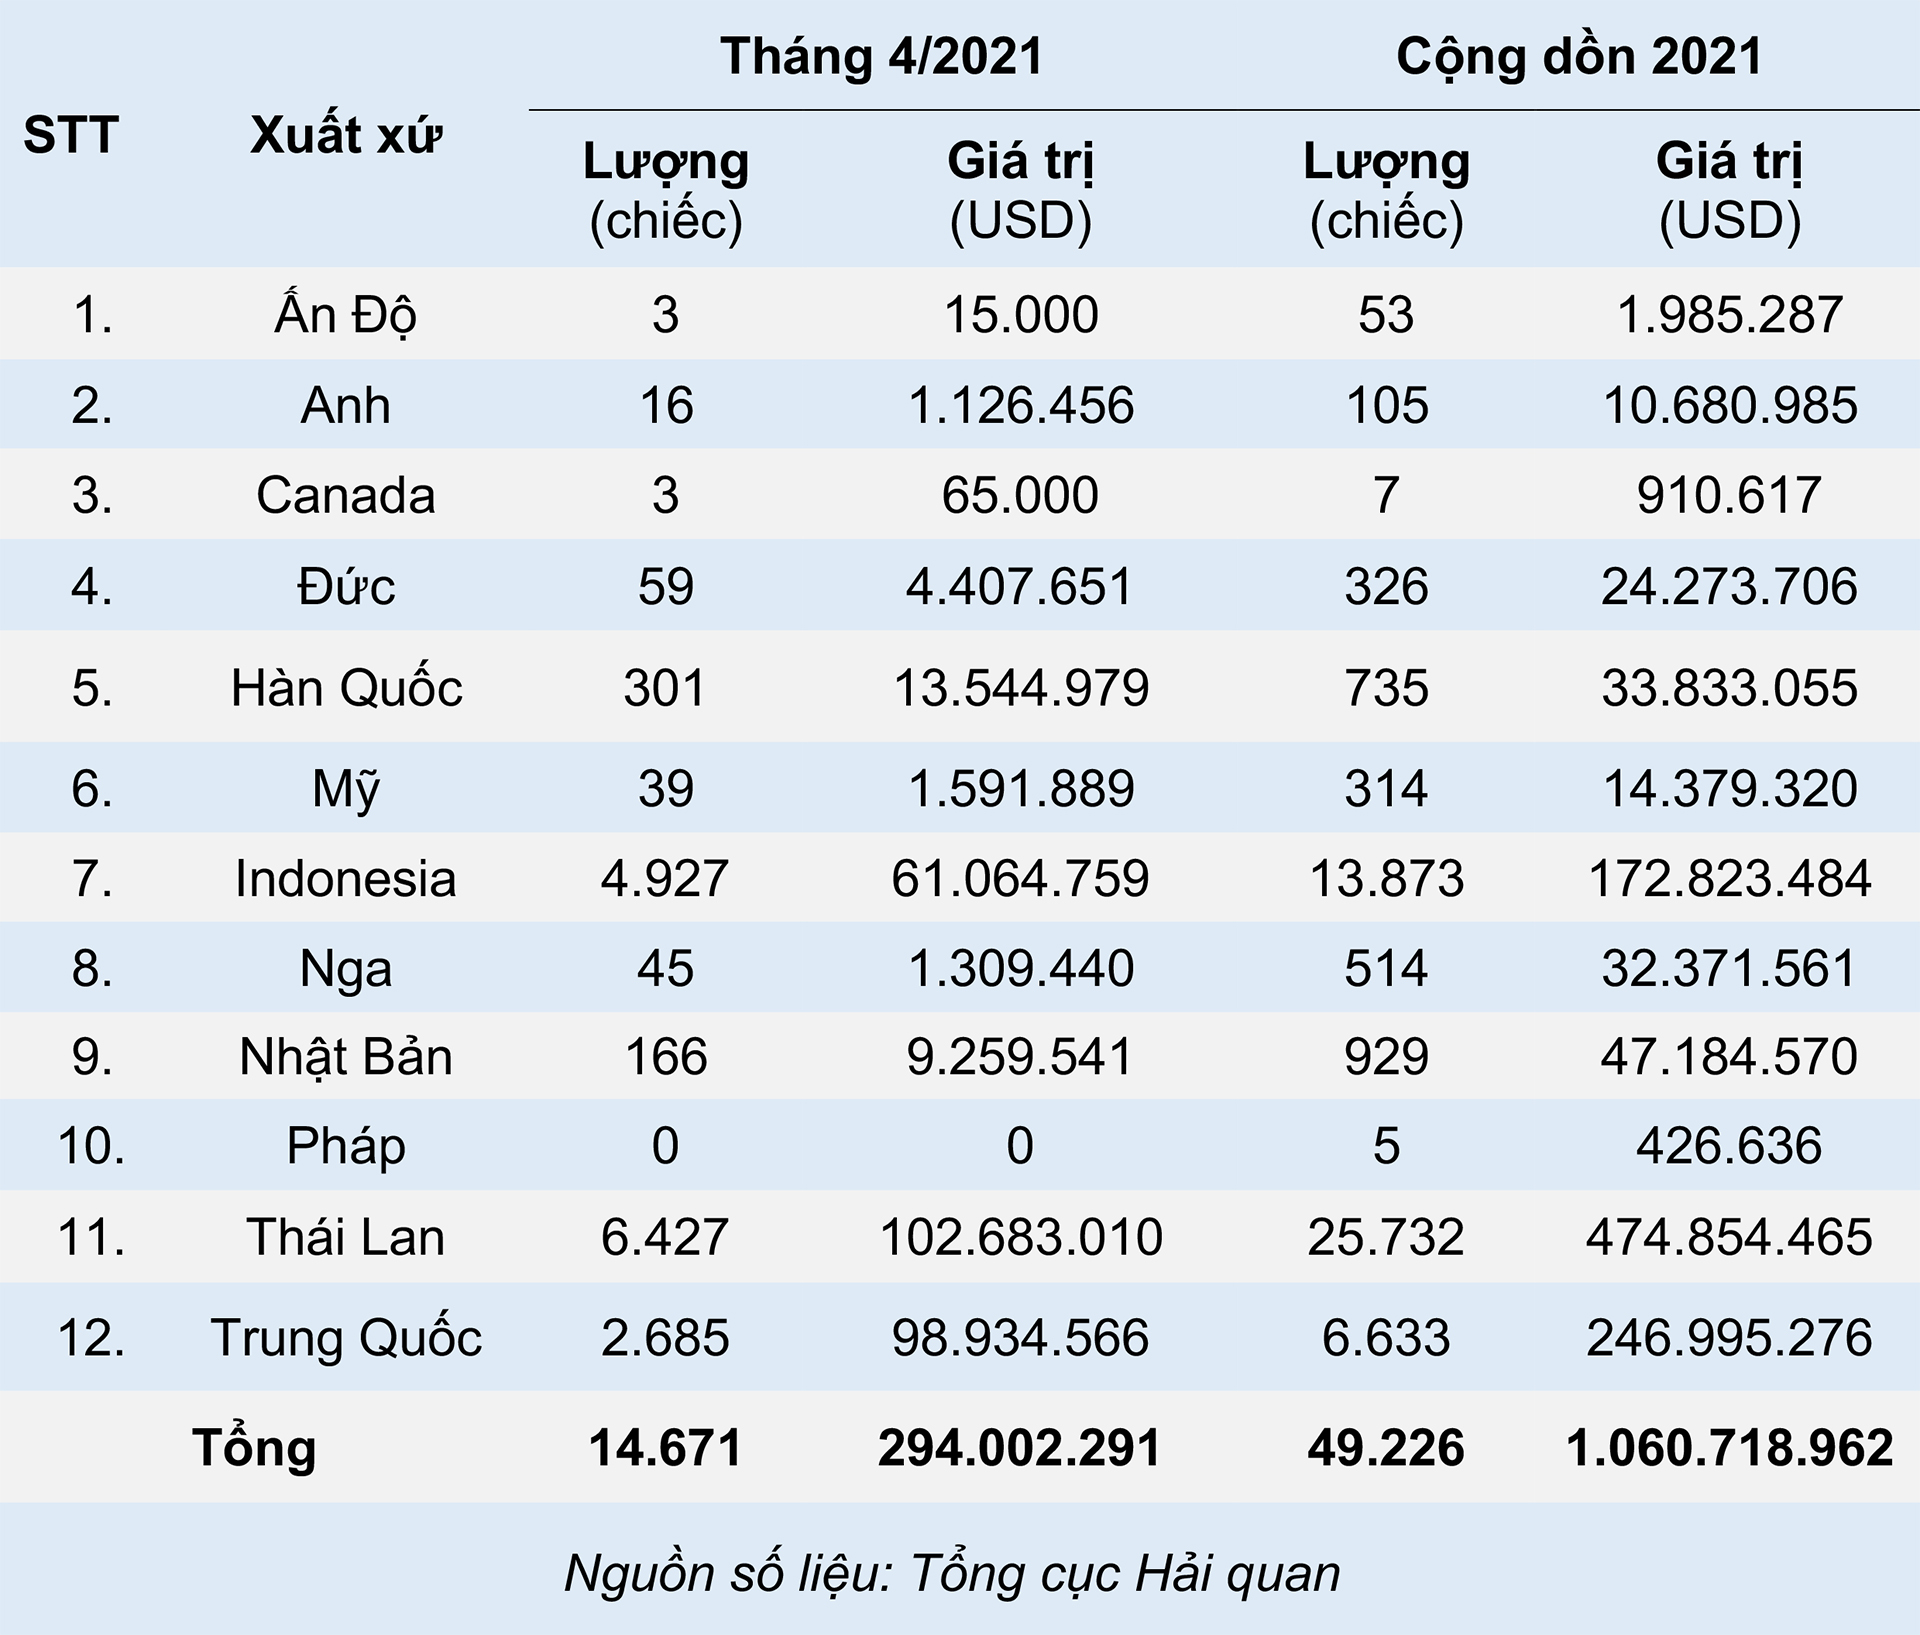 Ô tô nhập khẩu Trung Quốc tiếp tục tăng mạnh, xe từ Thái Lan giảm sâu ...